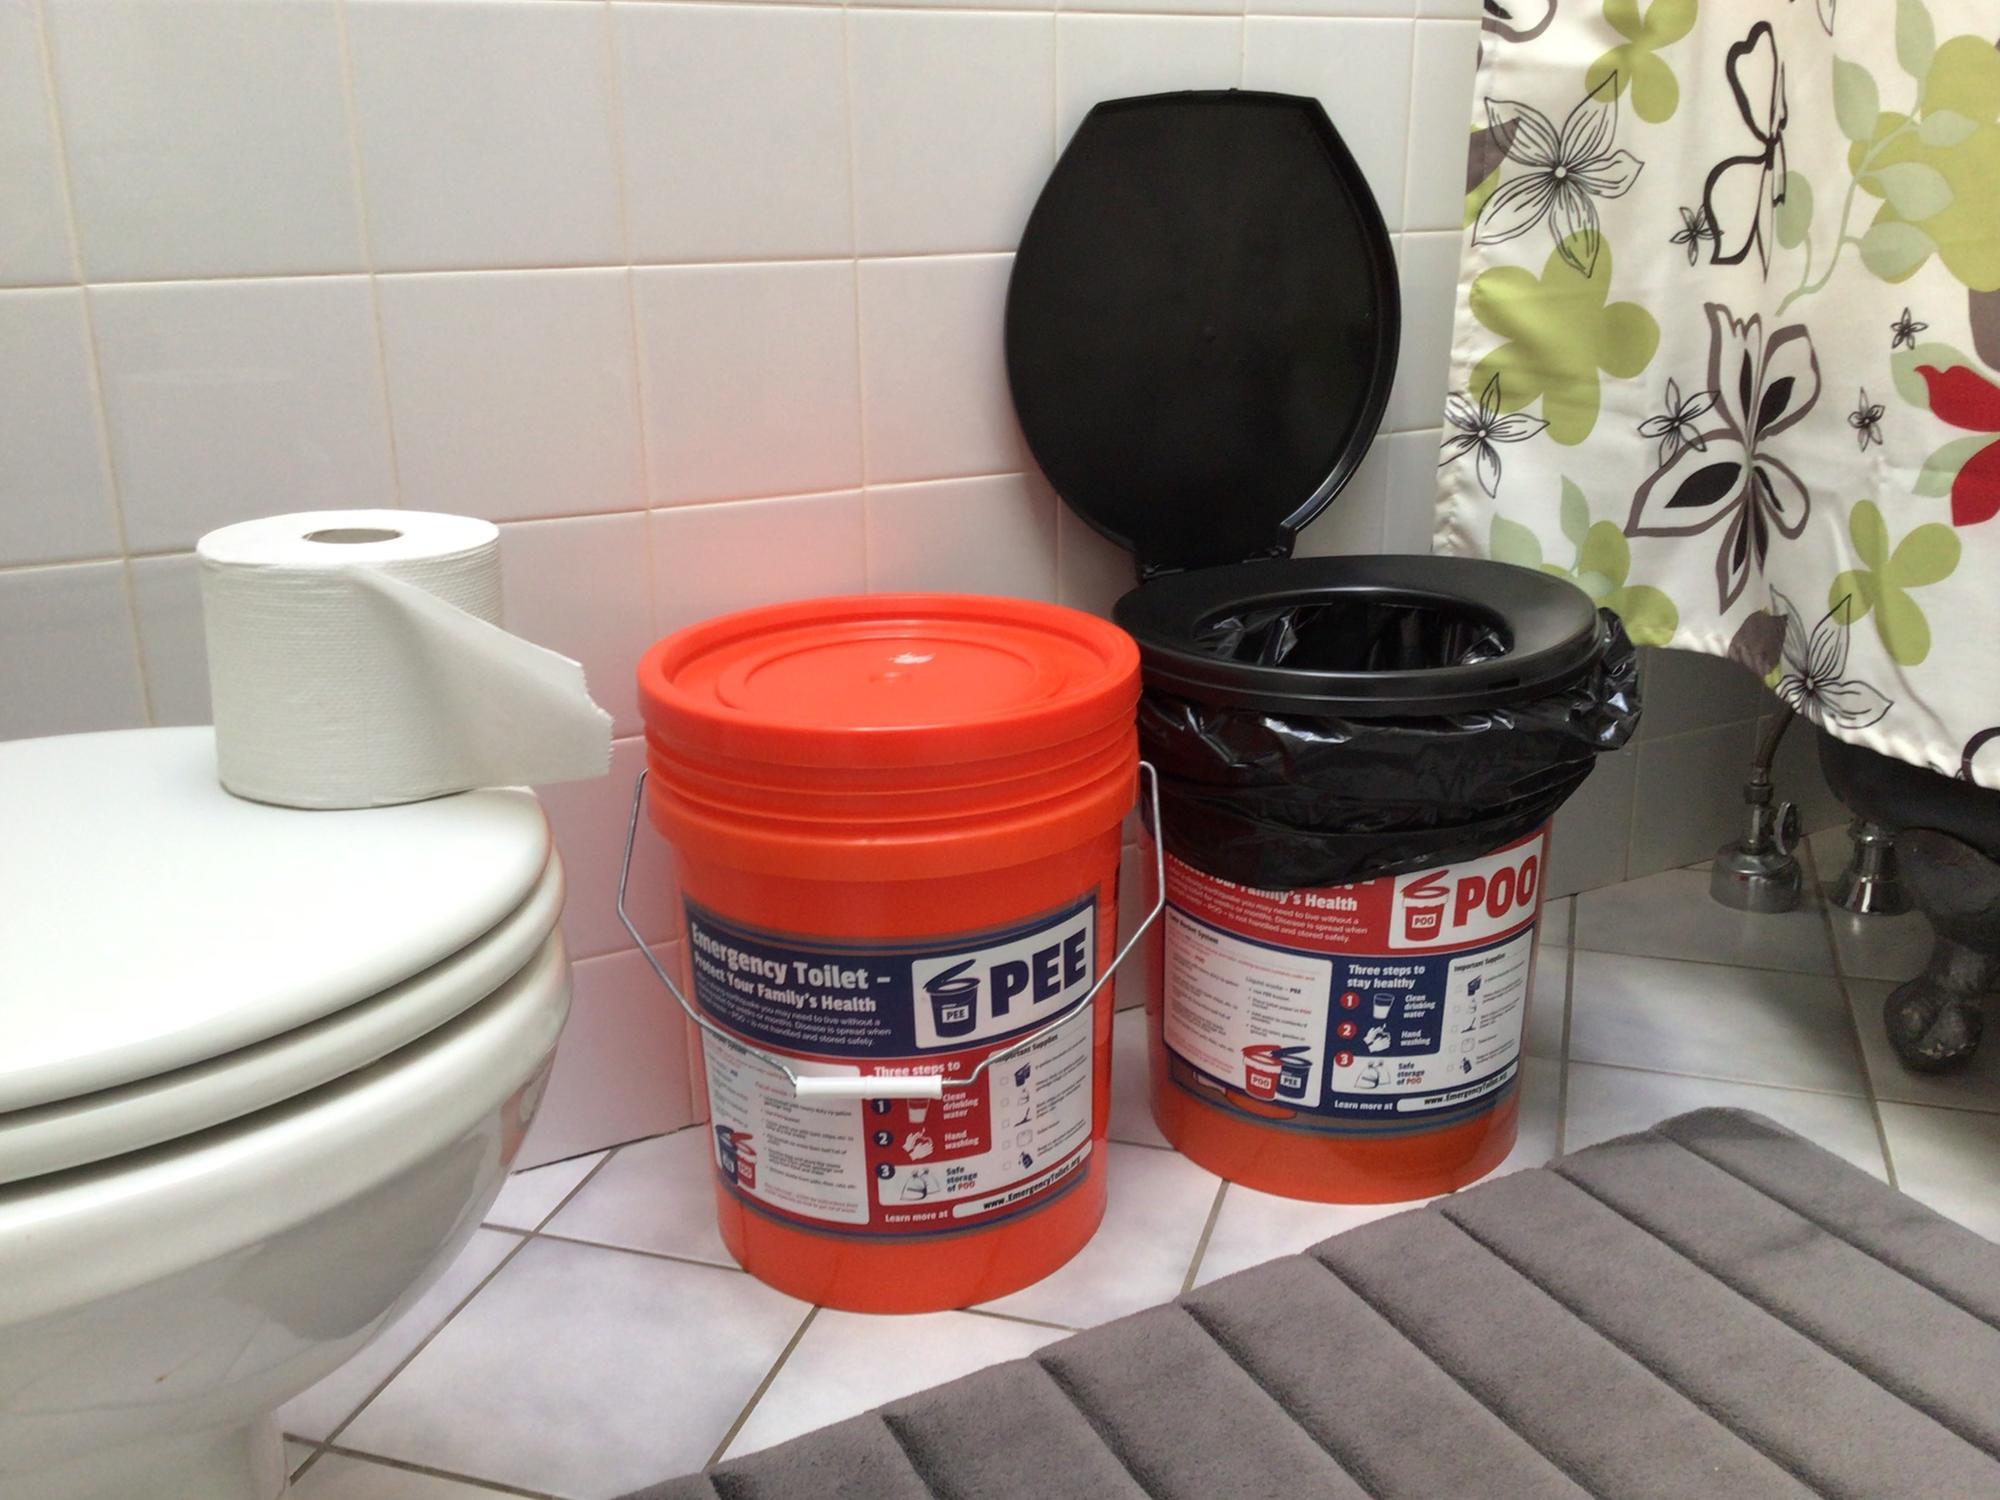 pee and poo buckets on a bathroom floor